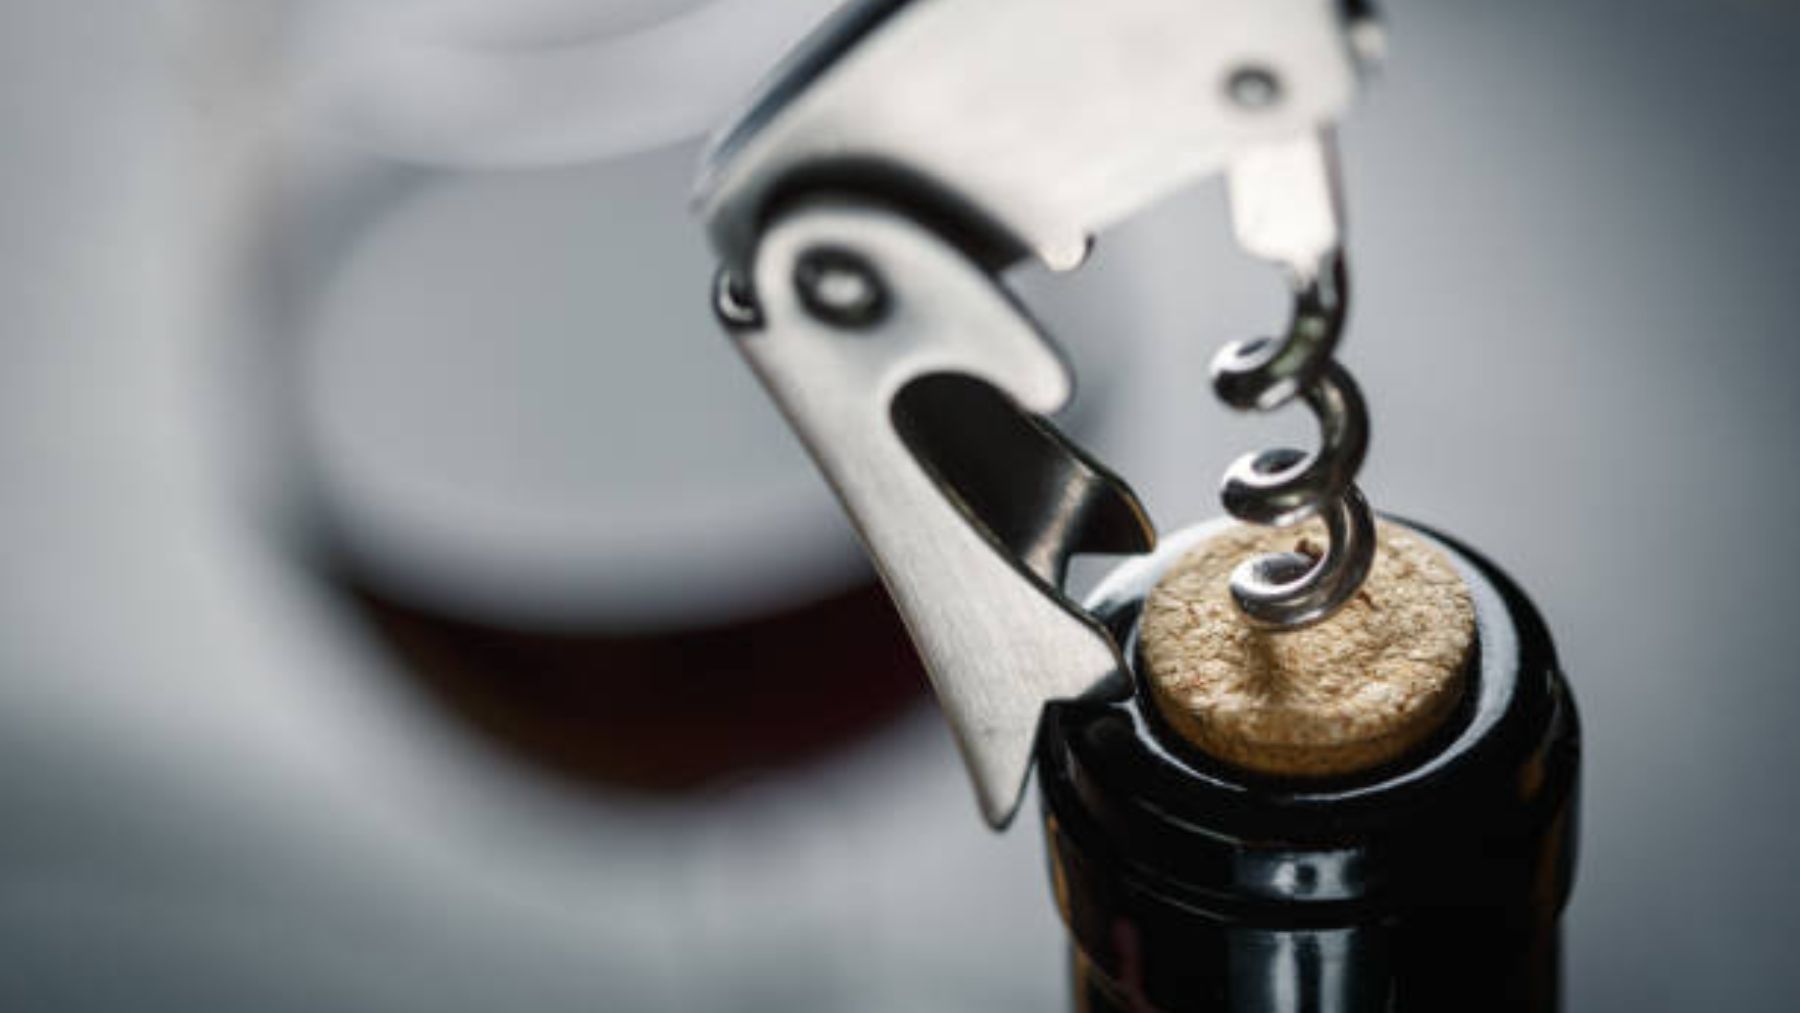 El nuevo truco para abrir las botellas de vino que se ha viralizado en Instragram y podrías ser peligroso